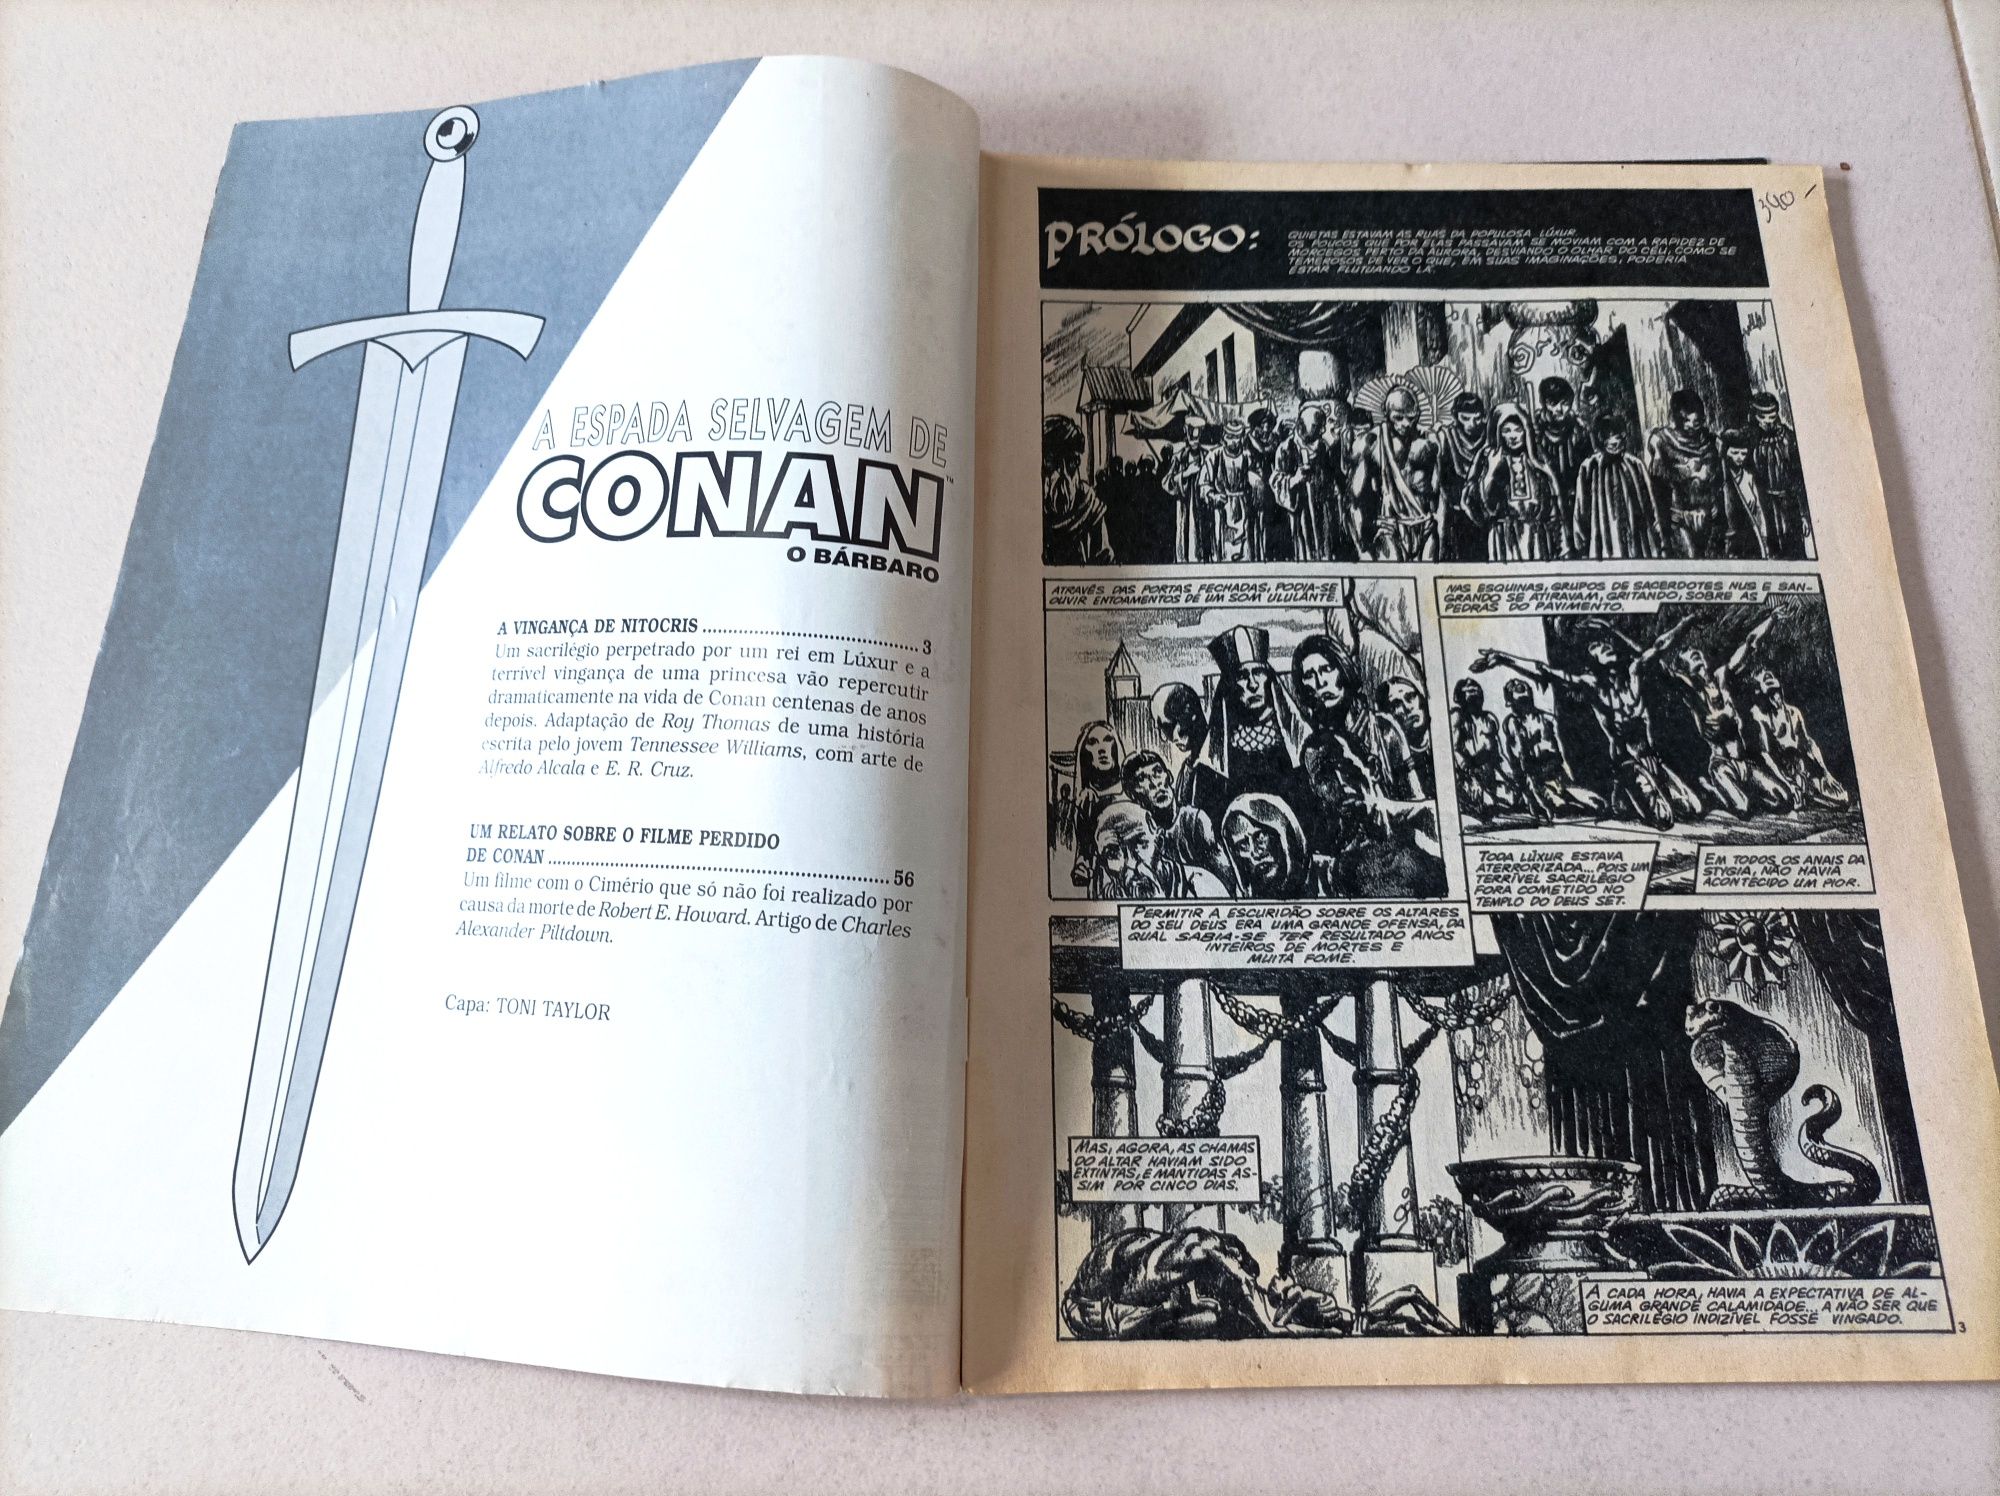 Lote de 3 Revistas antigas - A Espada Selvagem de Conan (Vintage)